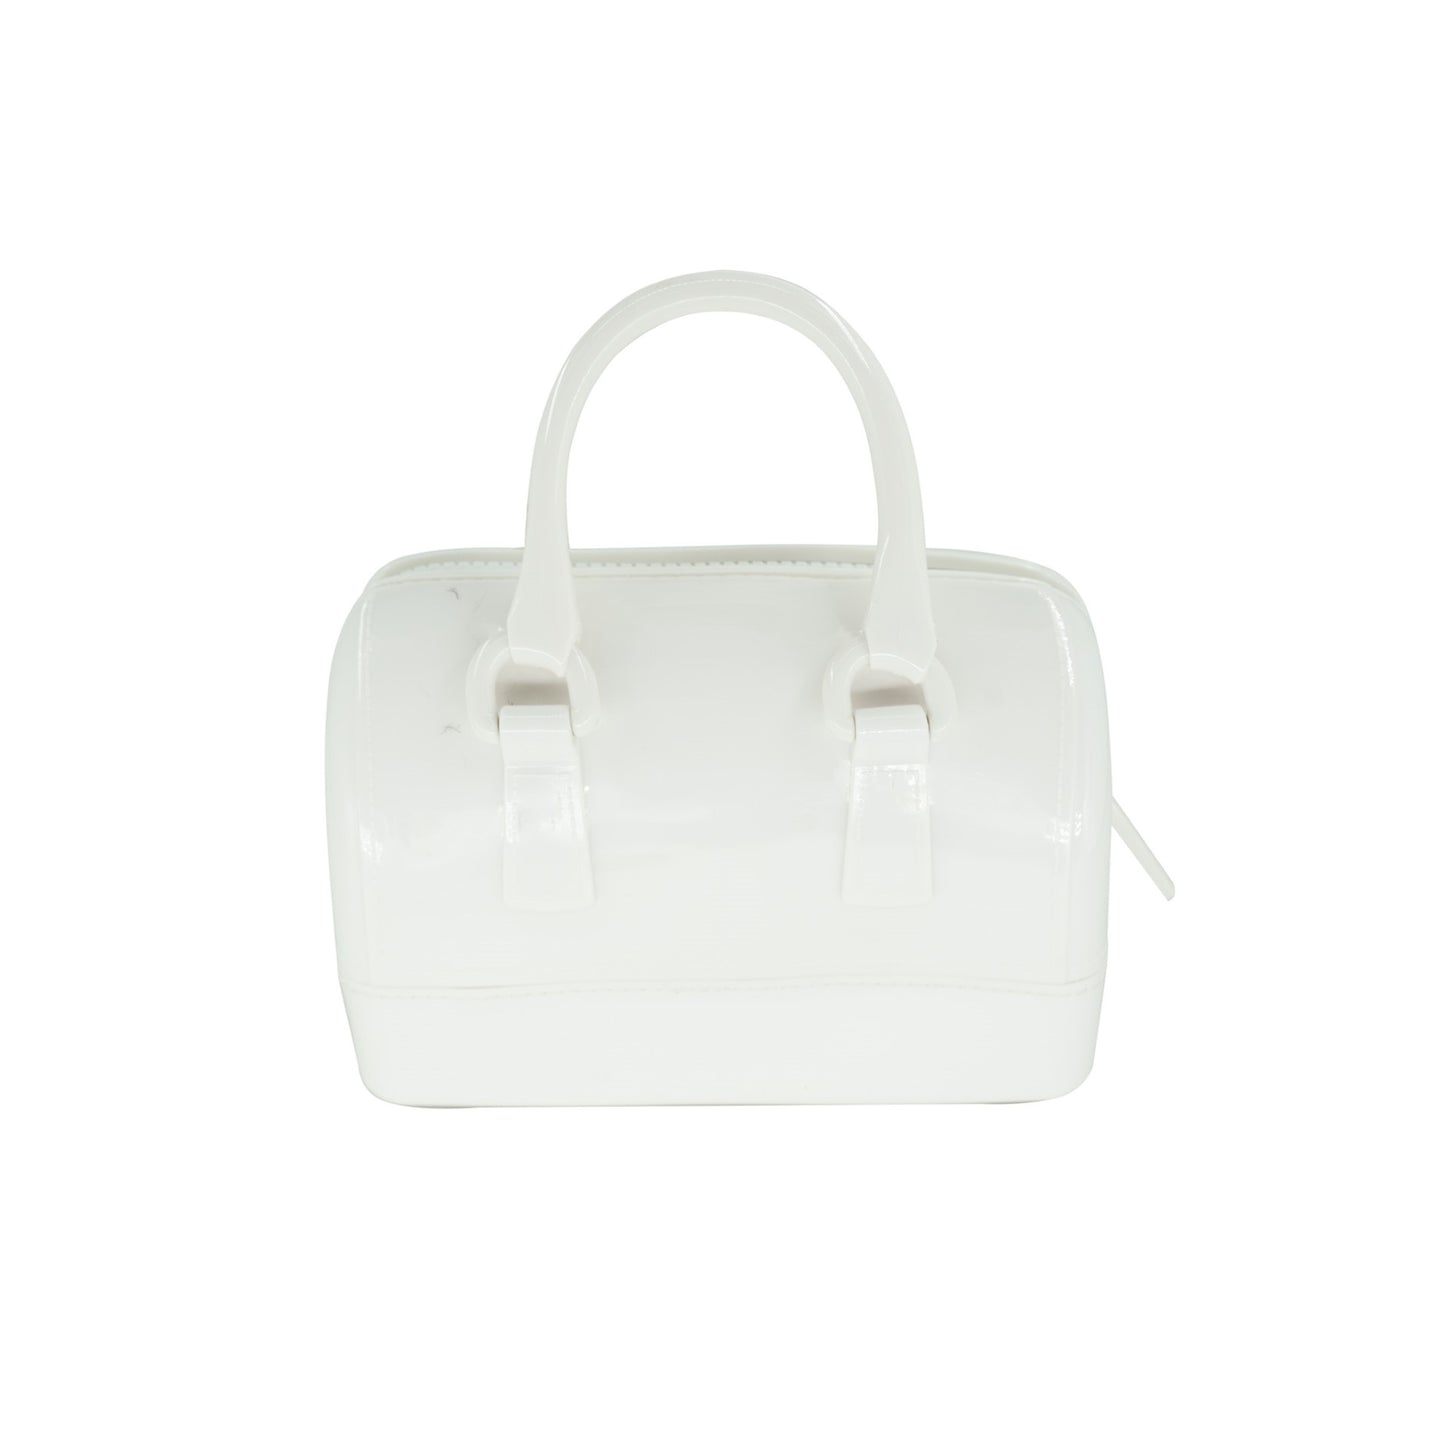 Bali Jelly Bag | White